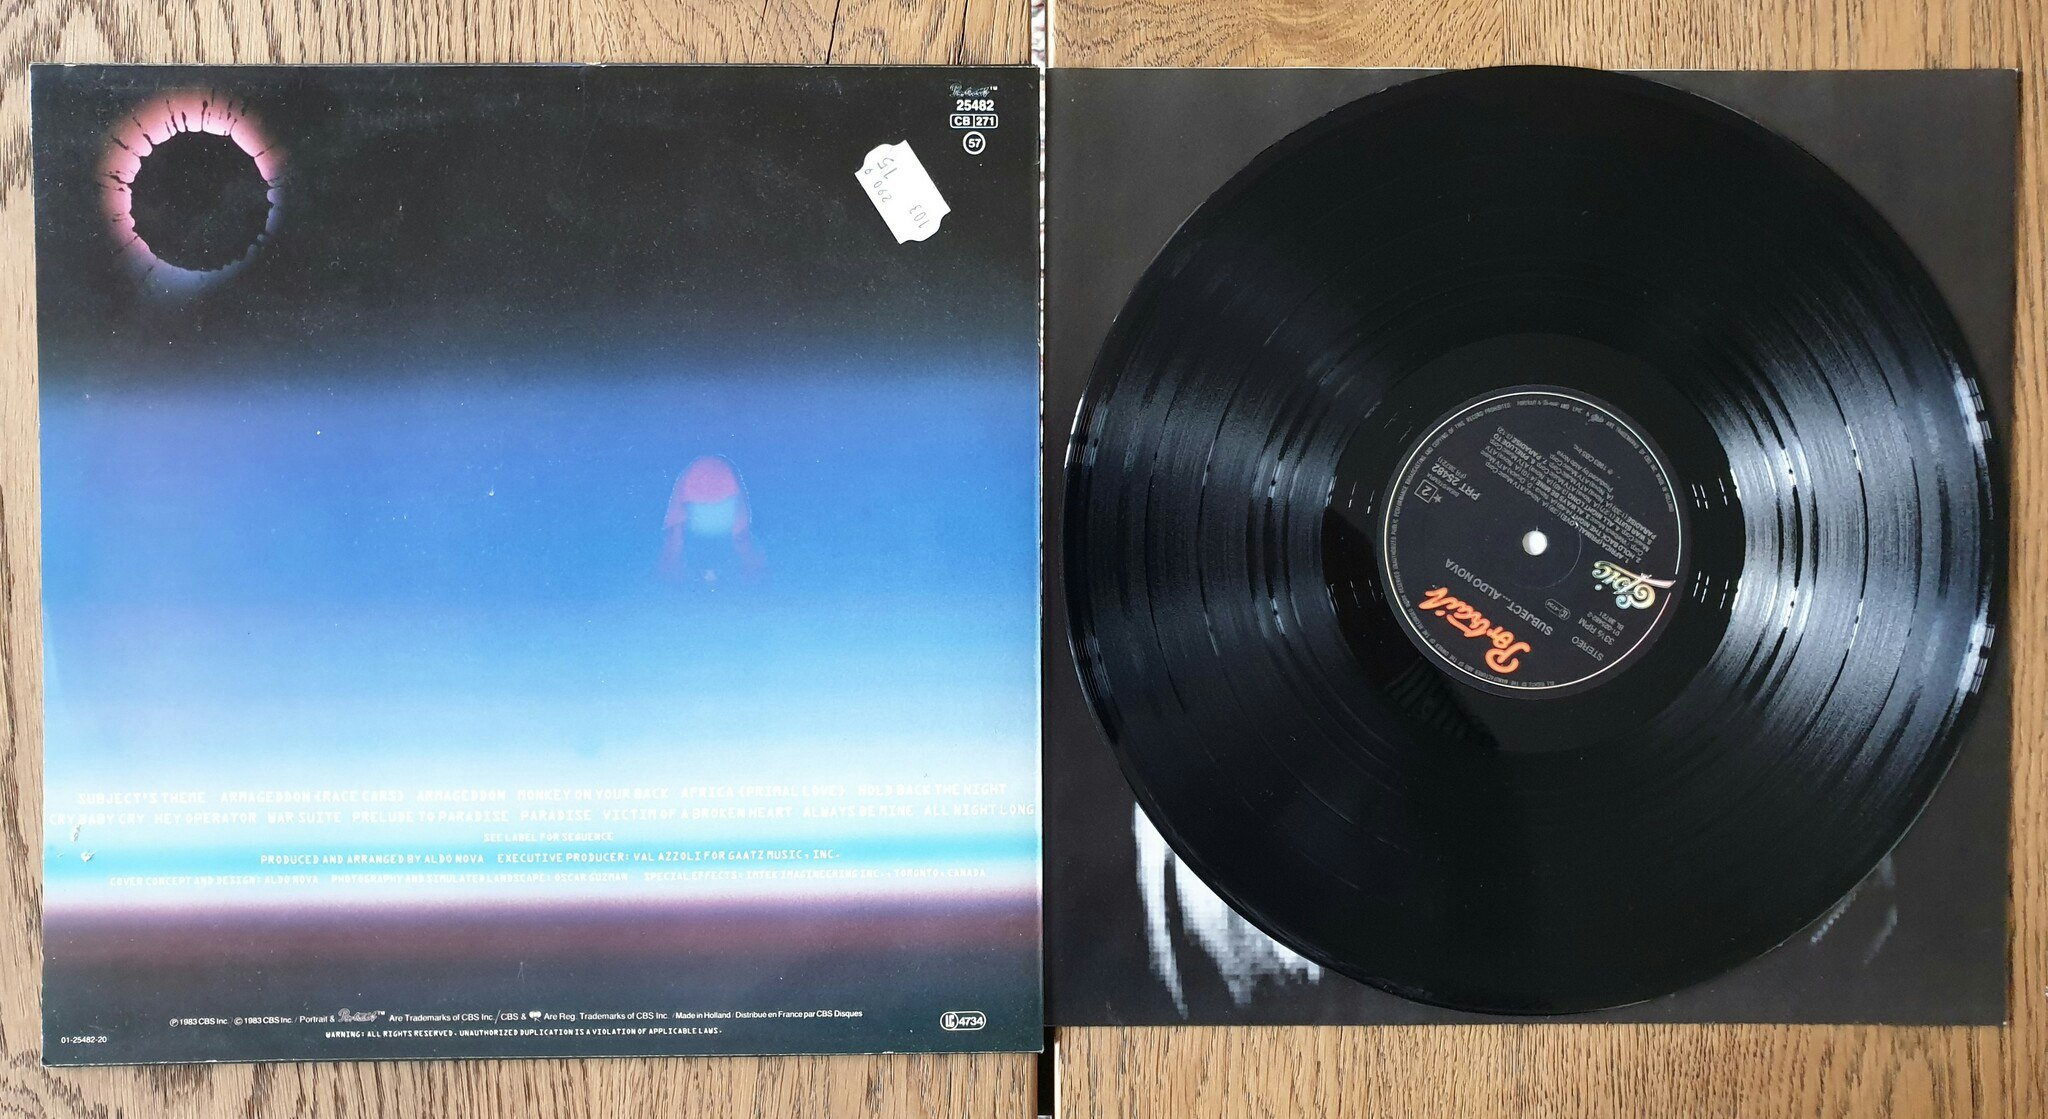 Subject, Aldo Nova. Vinyl LP